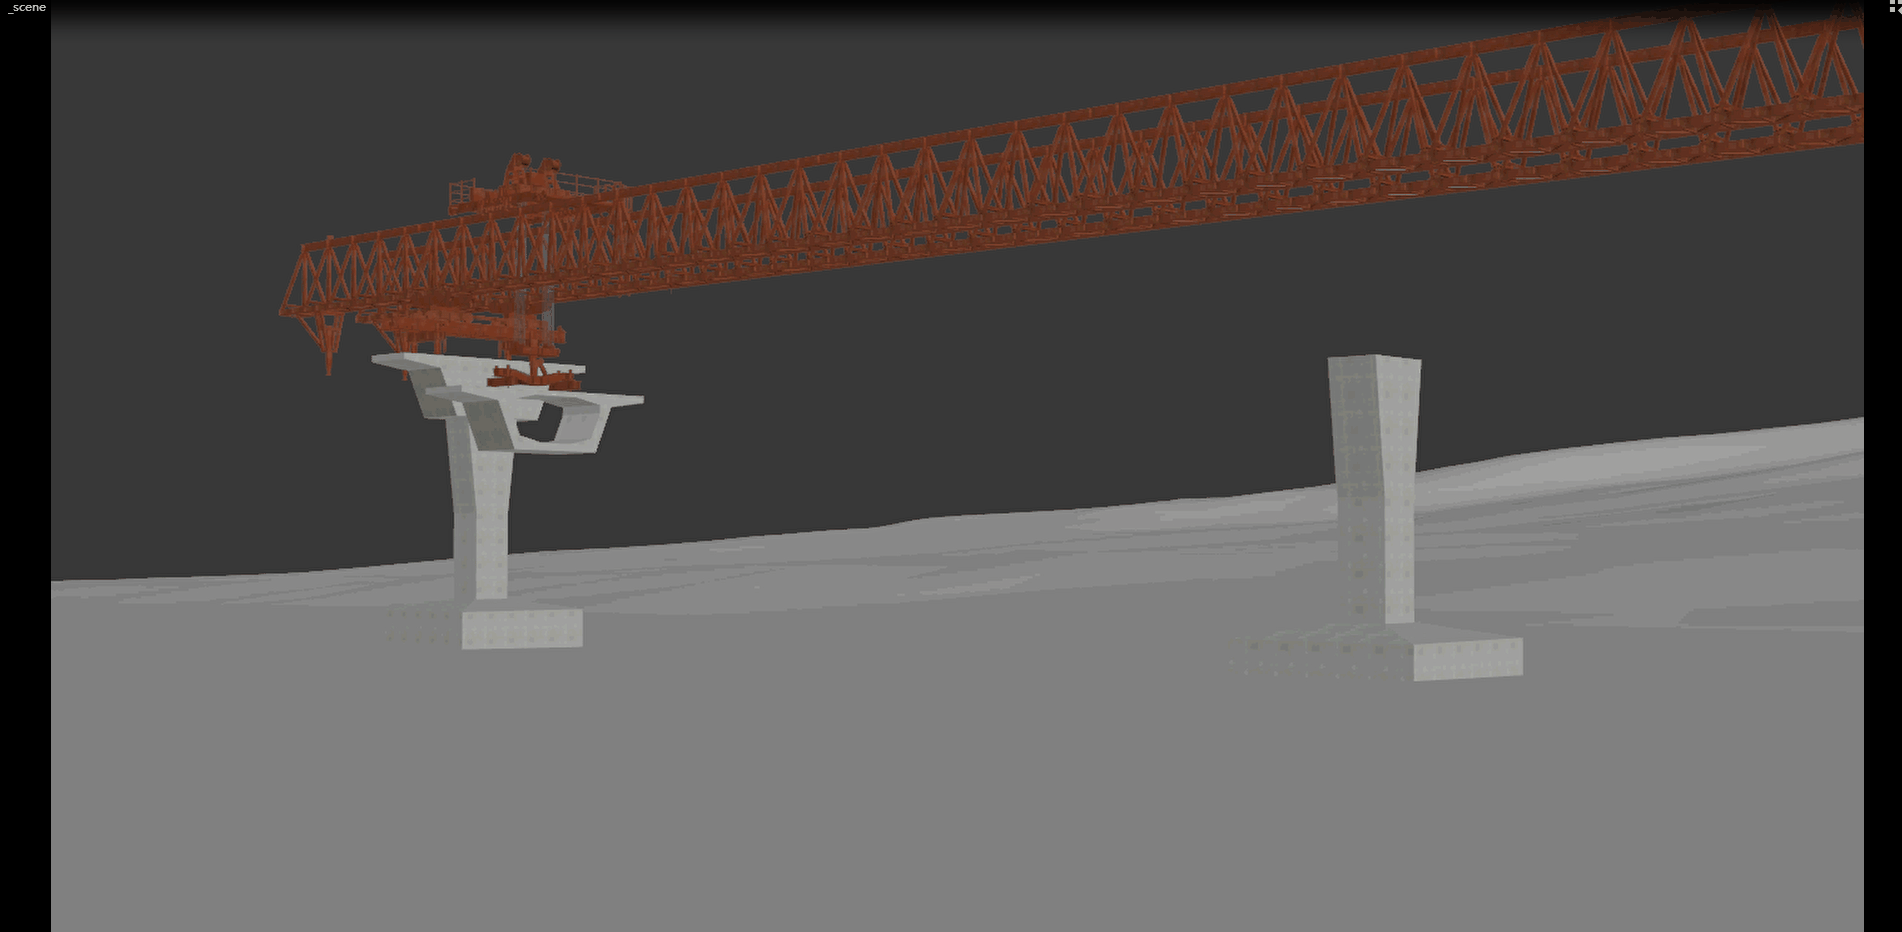 联合架桥机架设动画图片